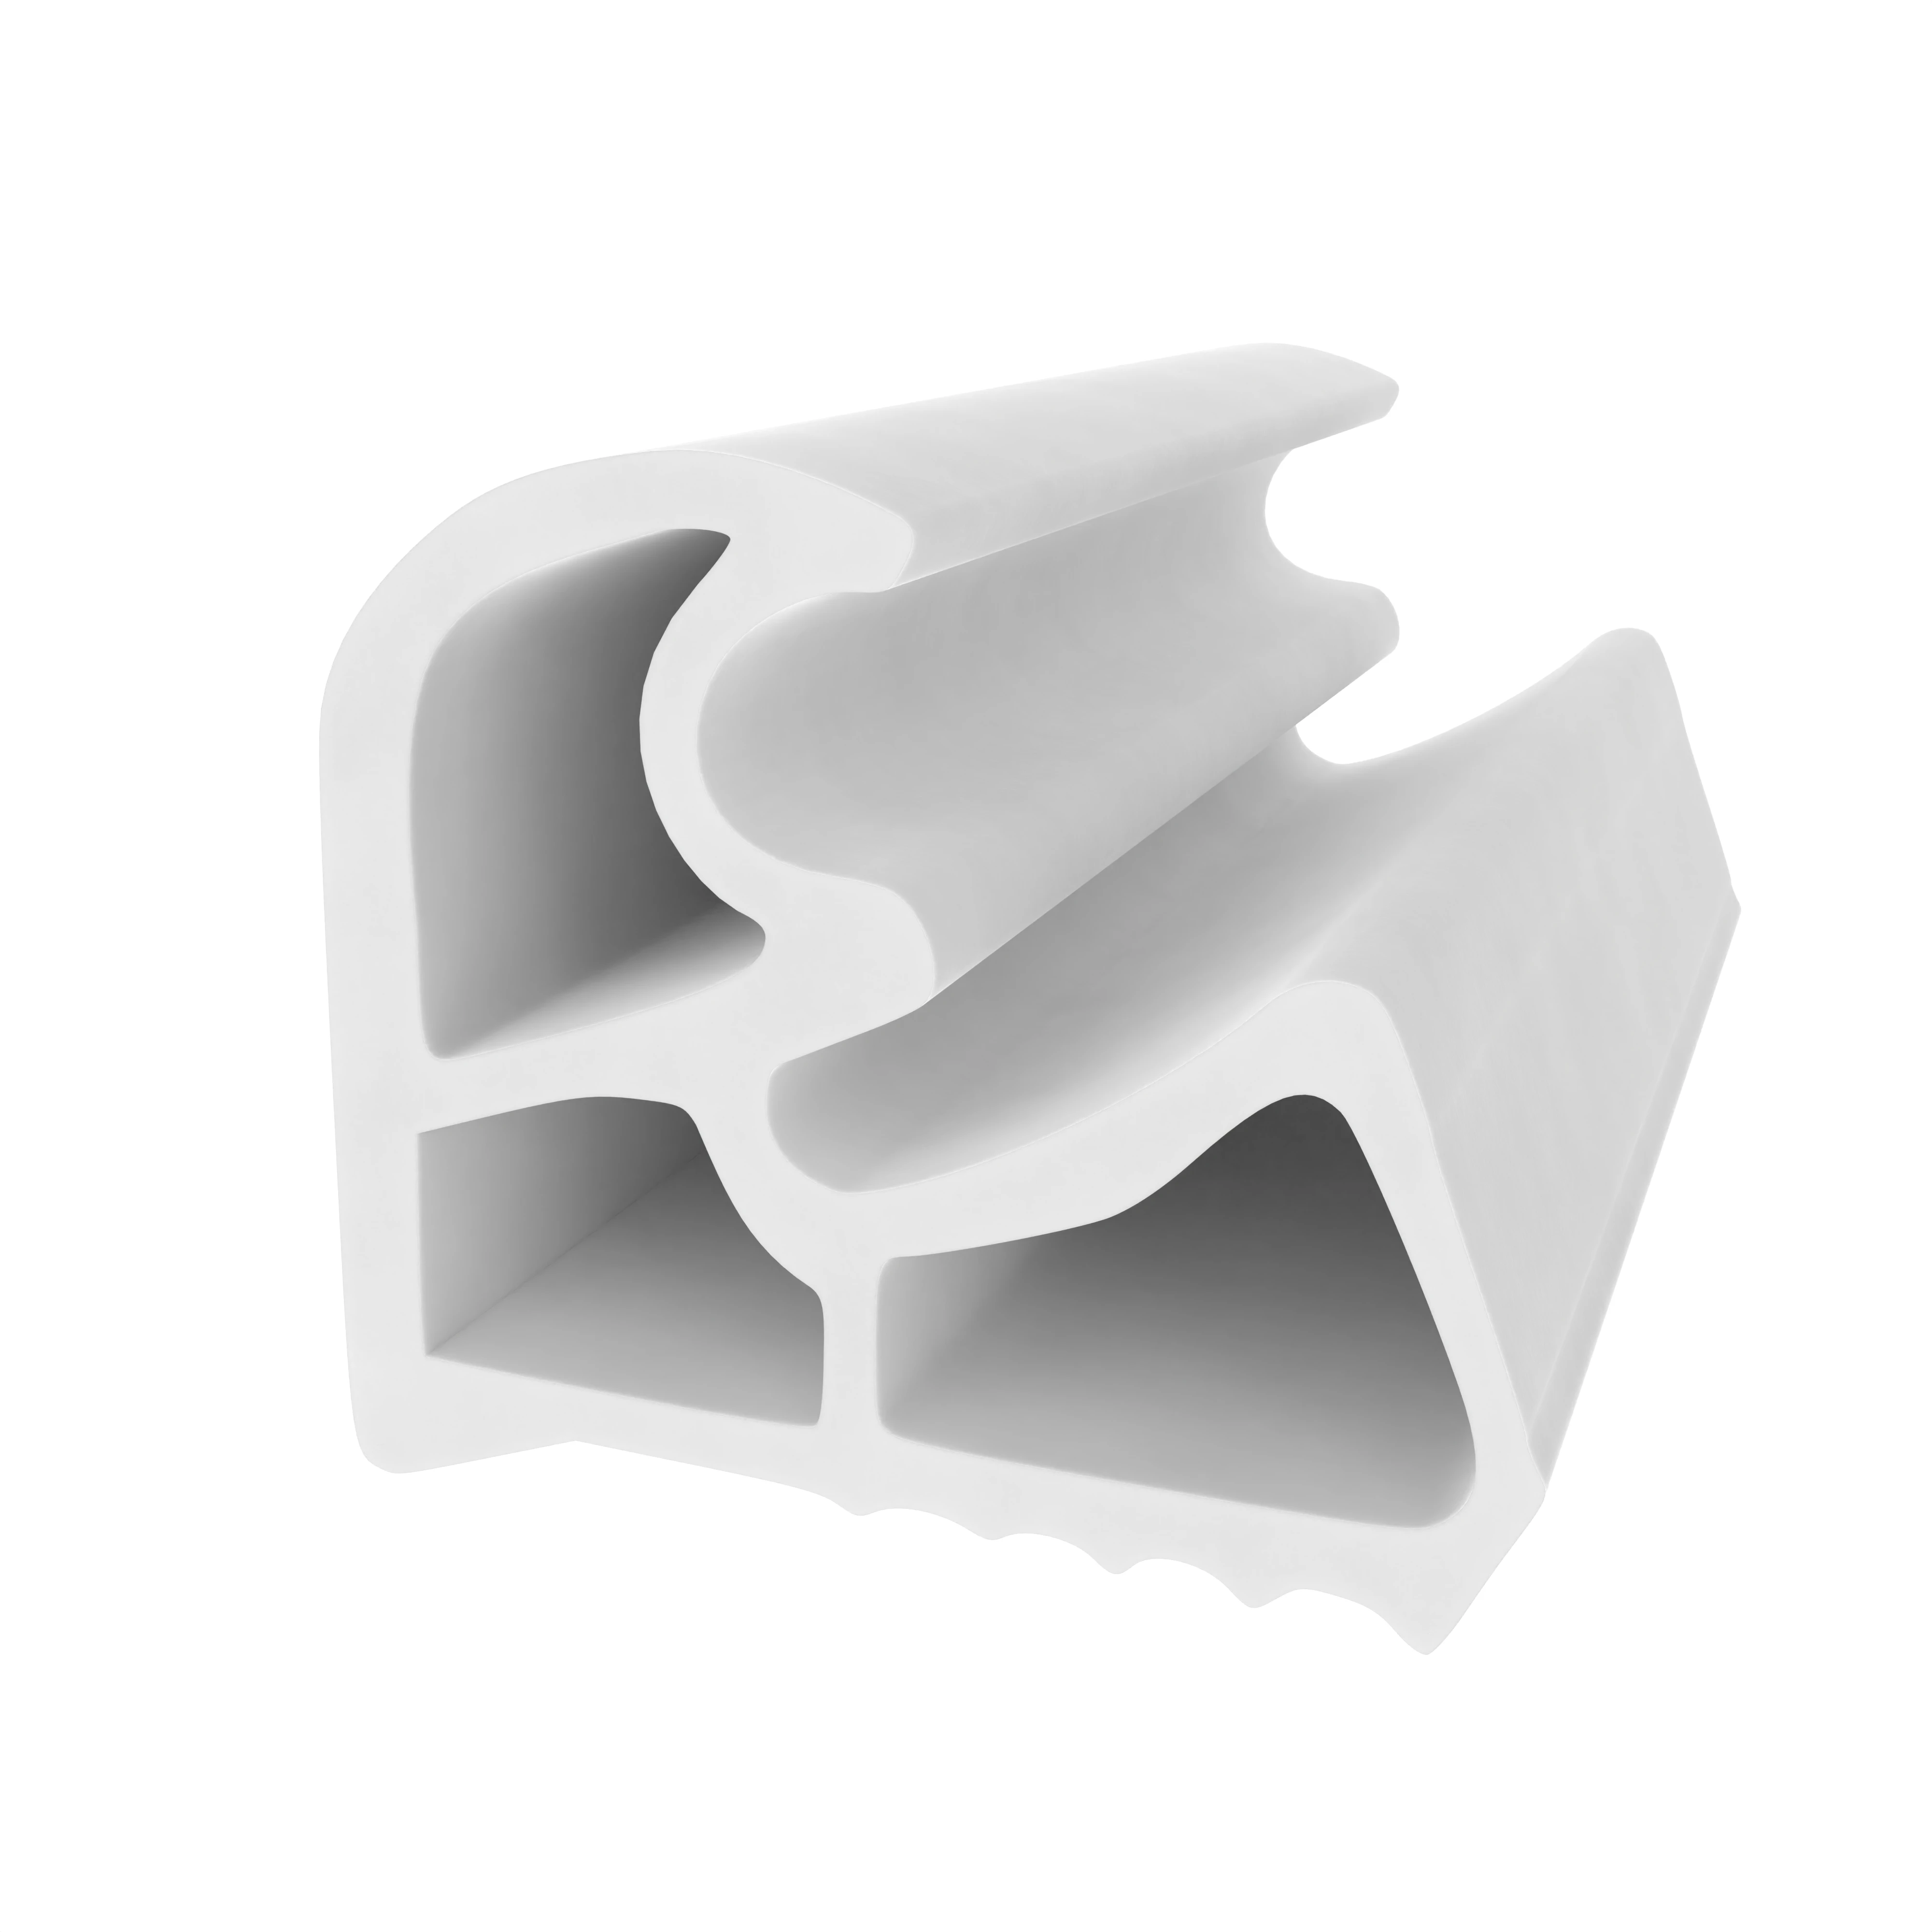 Stahlzargendichtung für Stahltüren | 24 mm Höhe | Farbe: weiß